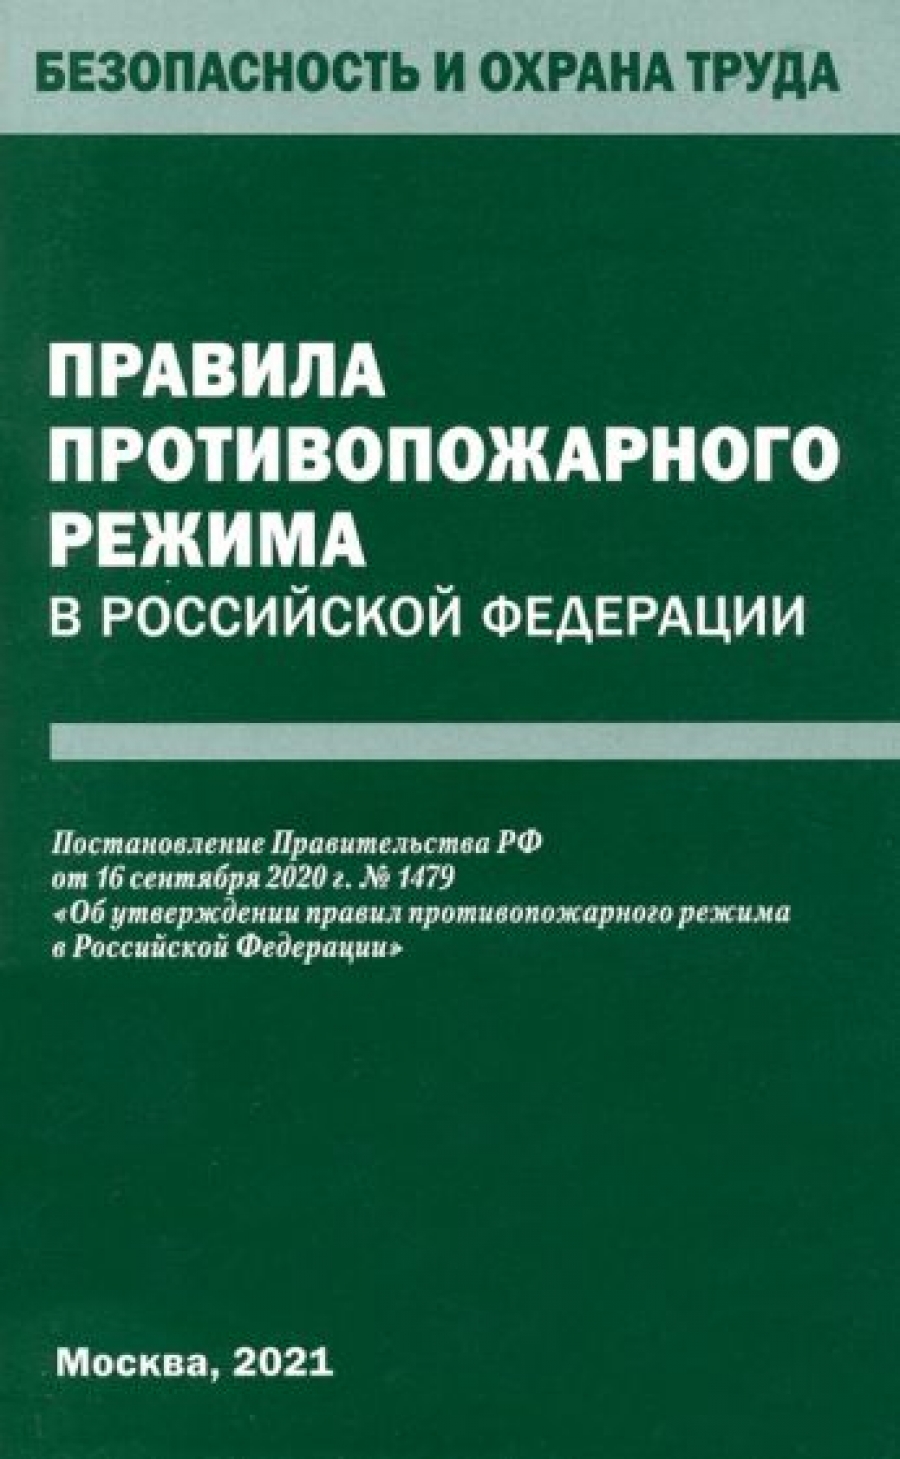 Правила противопожарного режима в Российской Федерации 